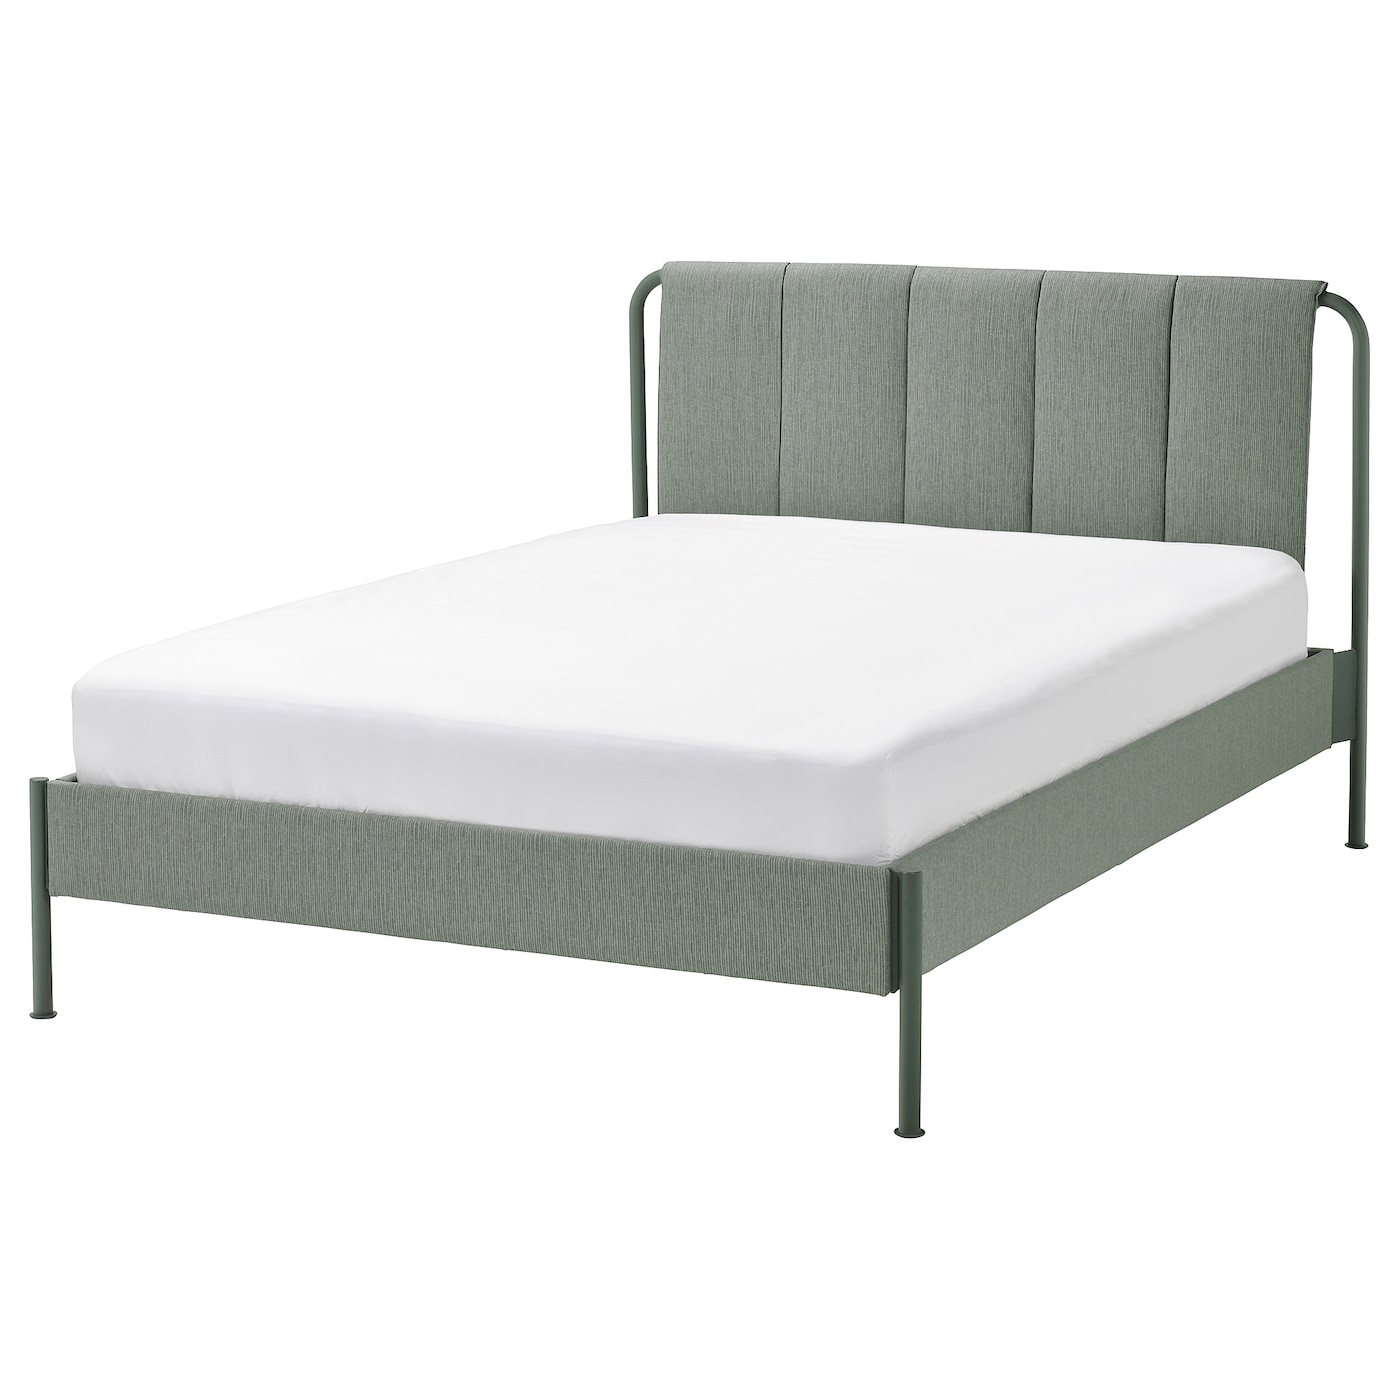 Каркас кровати мягкий с матрасом - IKEA TÄLLÅSEN/TALLASEN, 200х140 см, матрас жесткий, серо-зеленый, ТЭЛЛАСОН ИКЕА